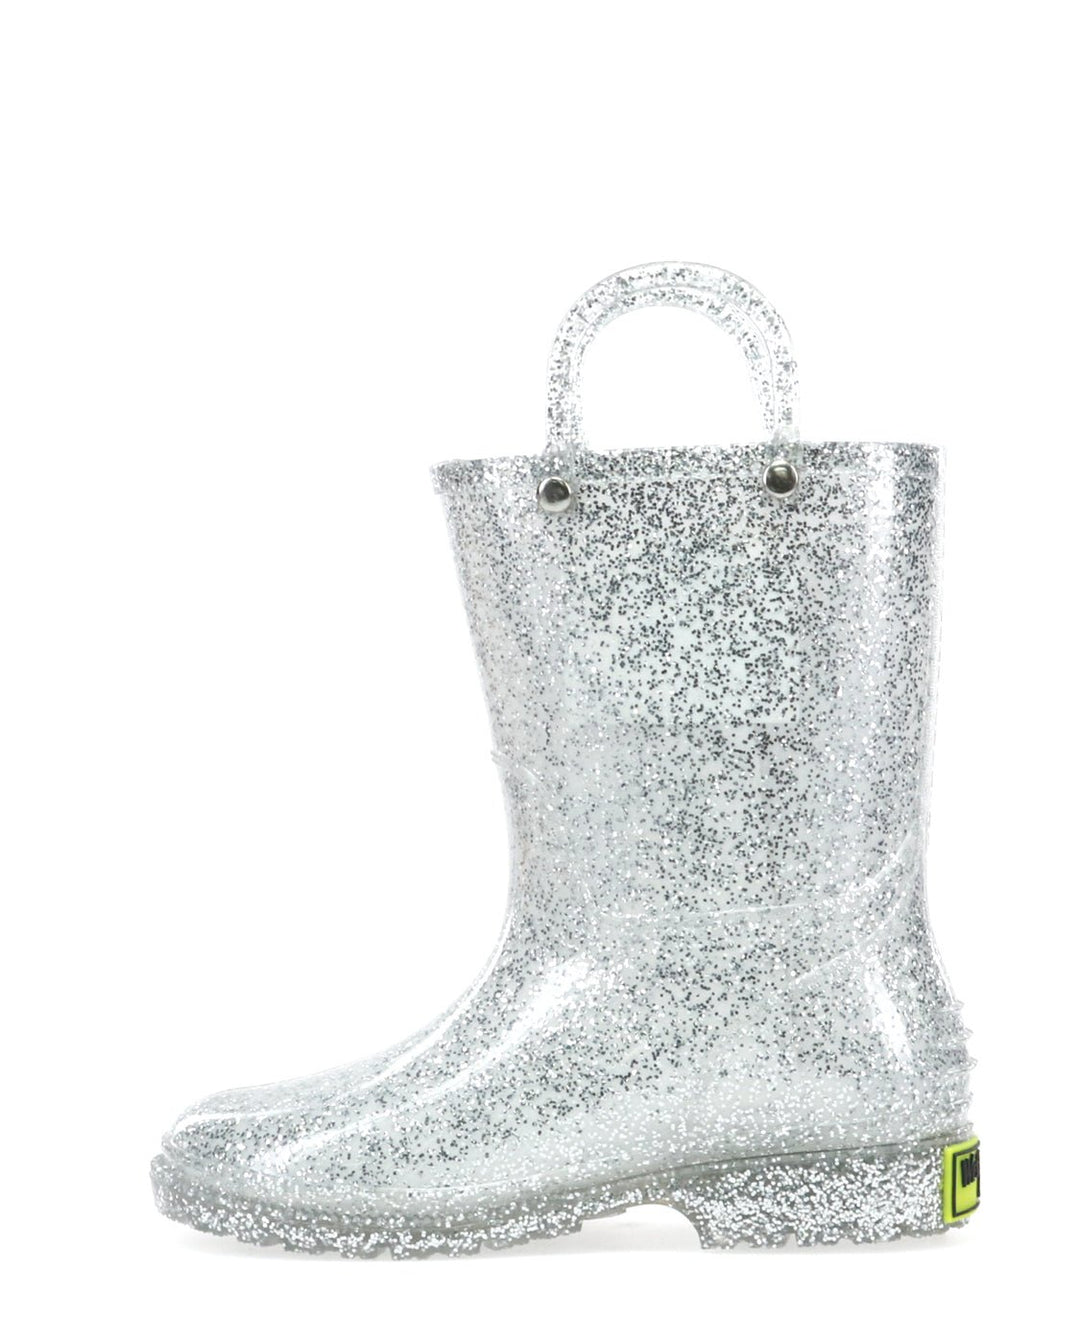 Kids Glitter Rain Boot - Silver - WSC B2B